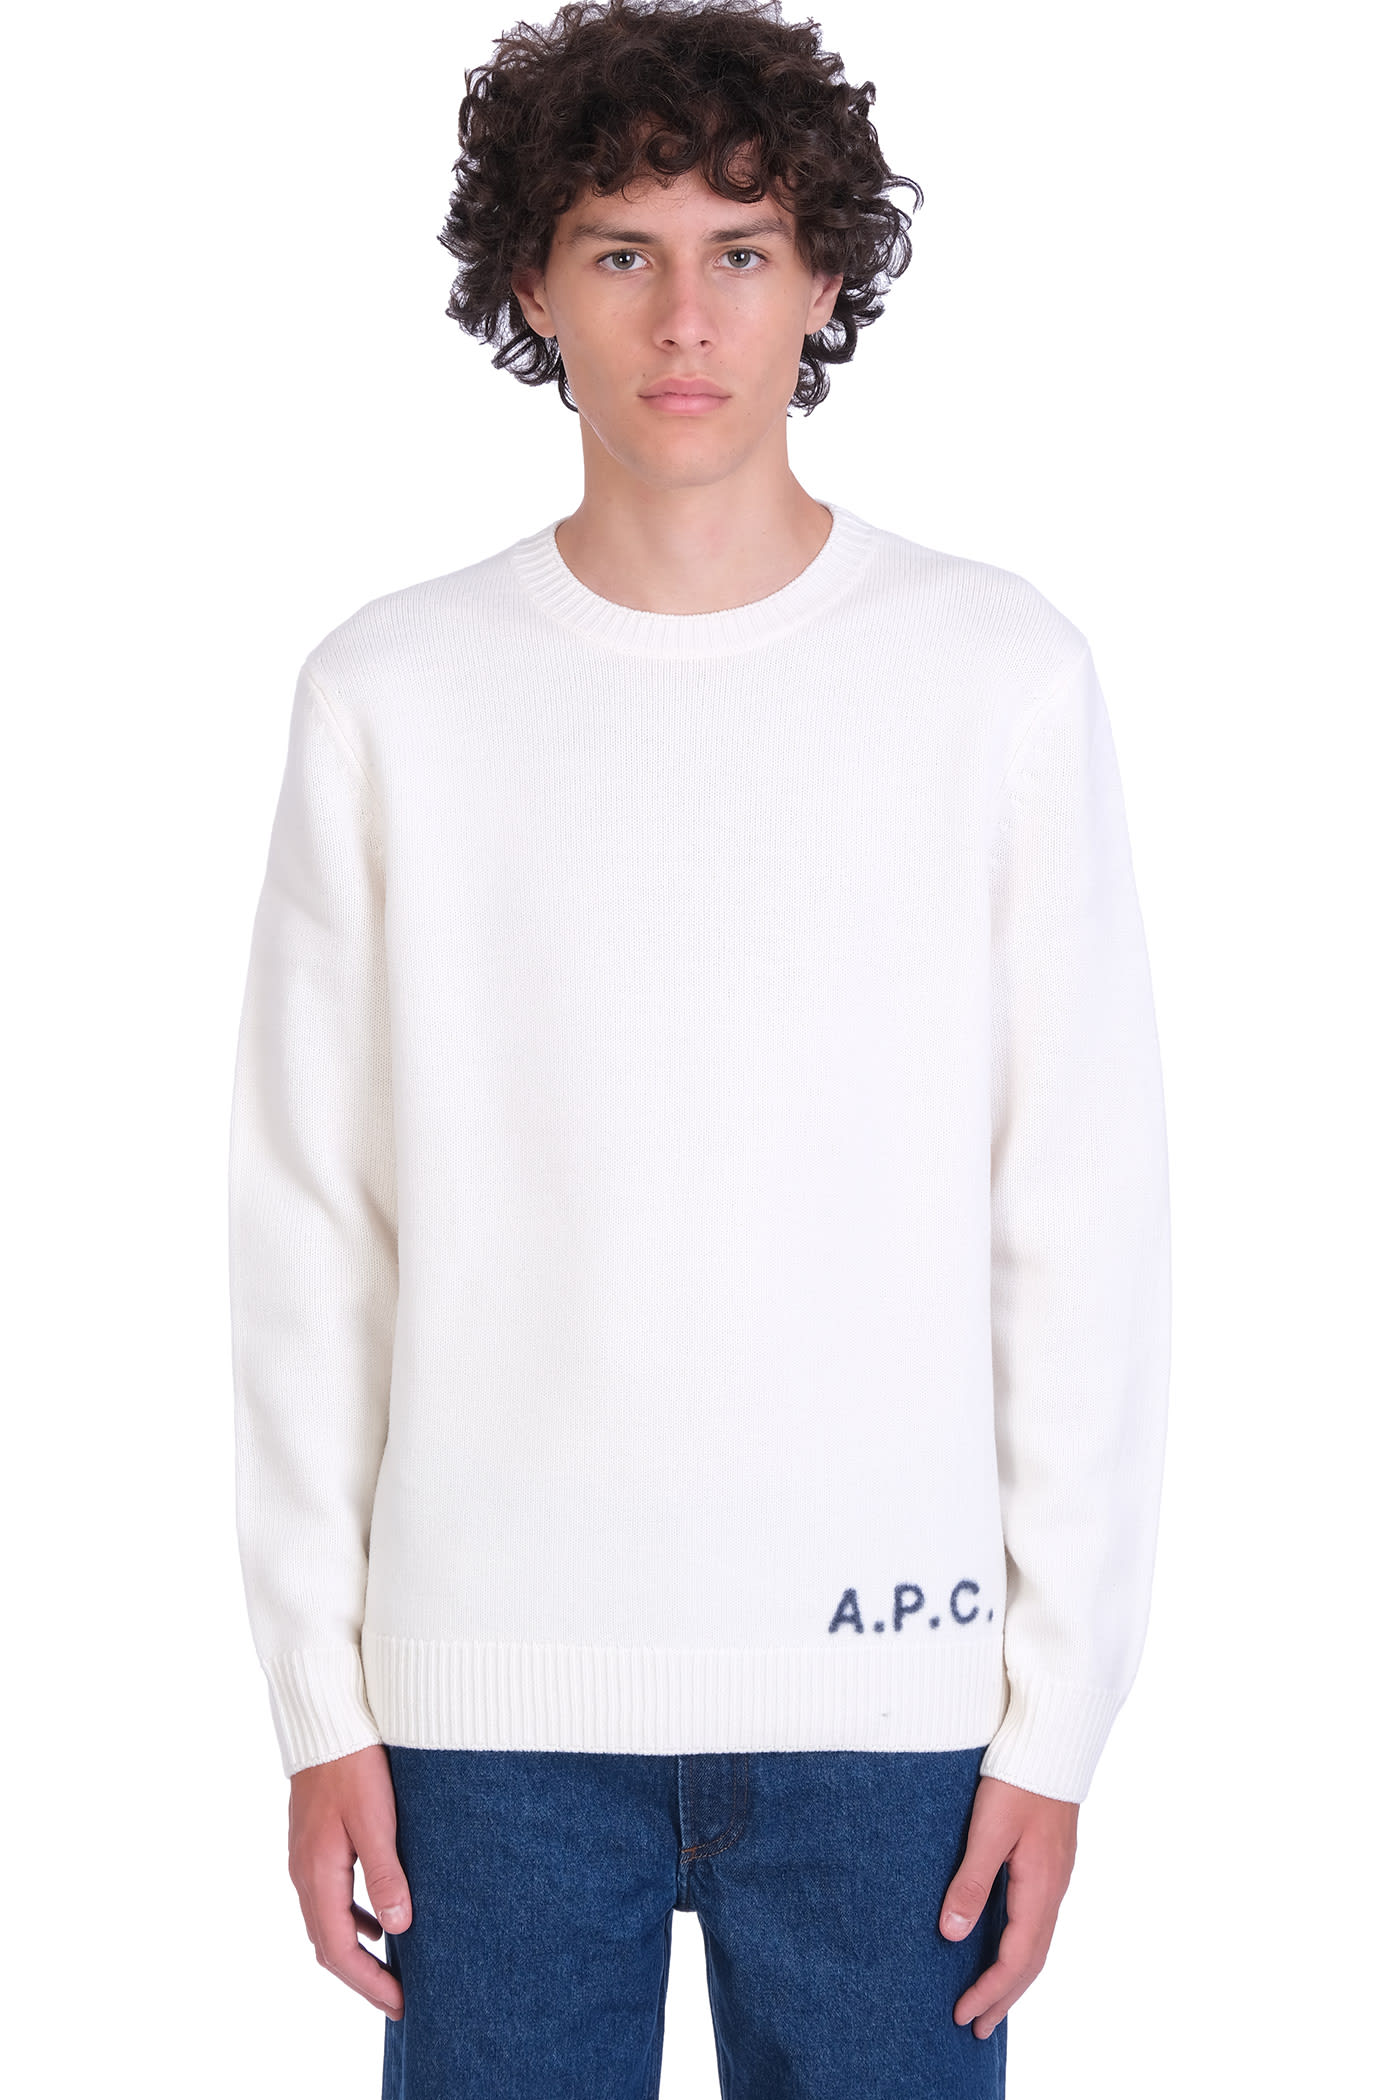 A.P.C. Edward Knitwear In White Wool